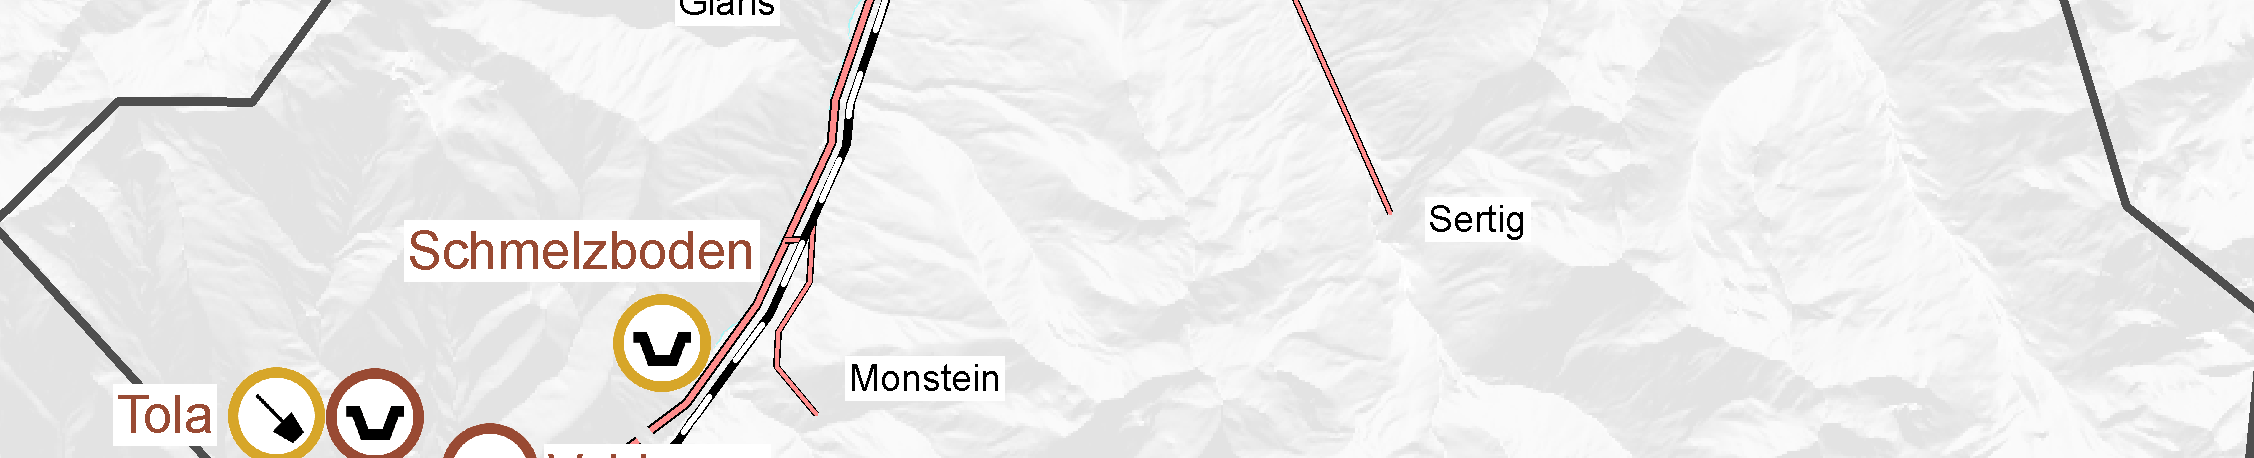 Standort Lusi / Laret (210 000 m 3, nur noch unverschmutztes Material), 15-20 Jahre. 4.